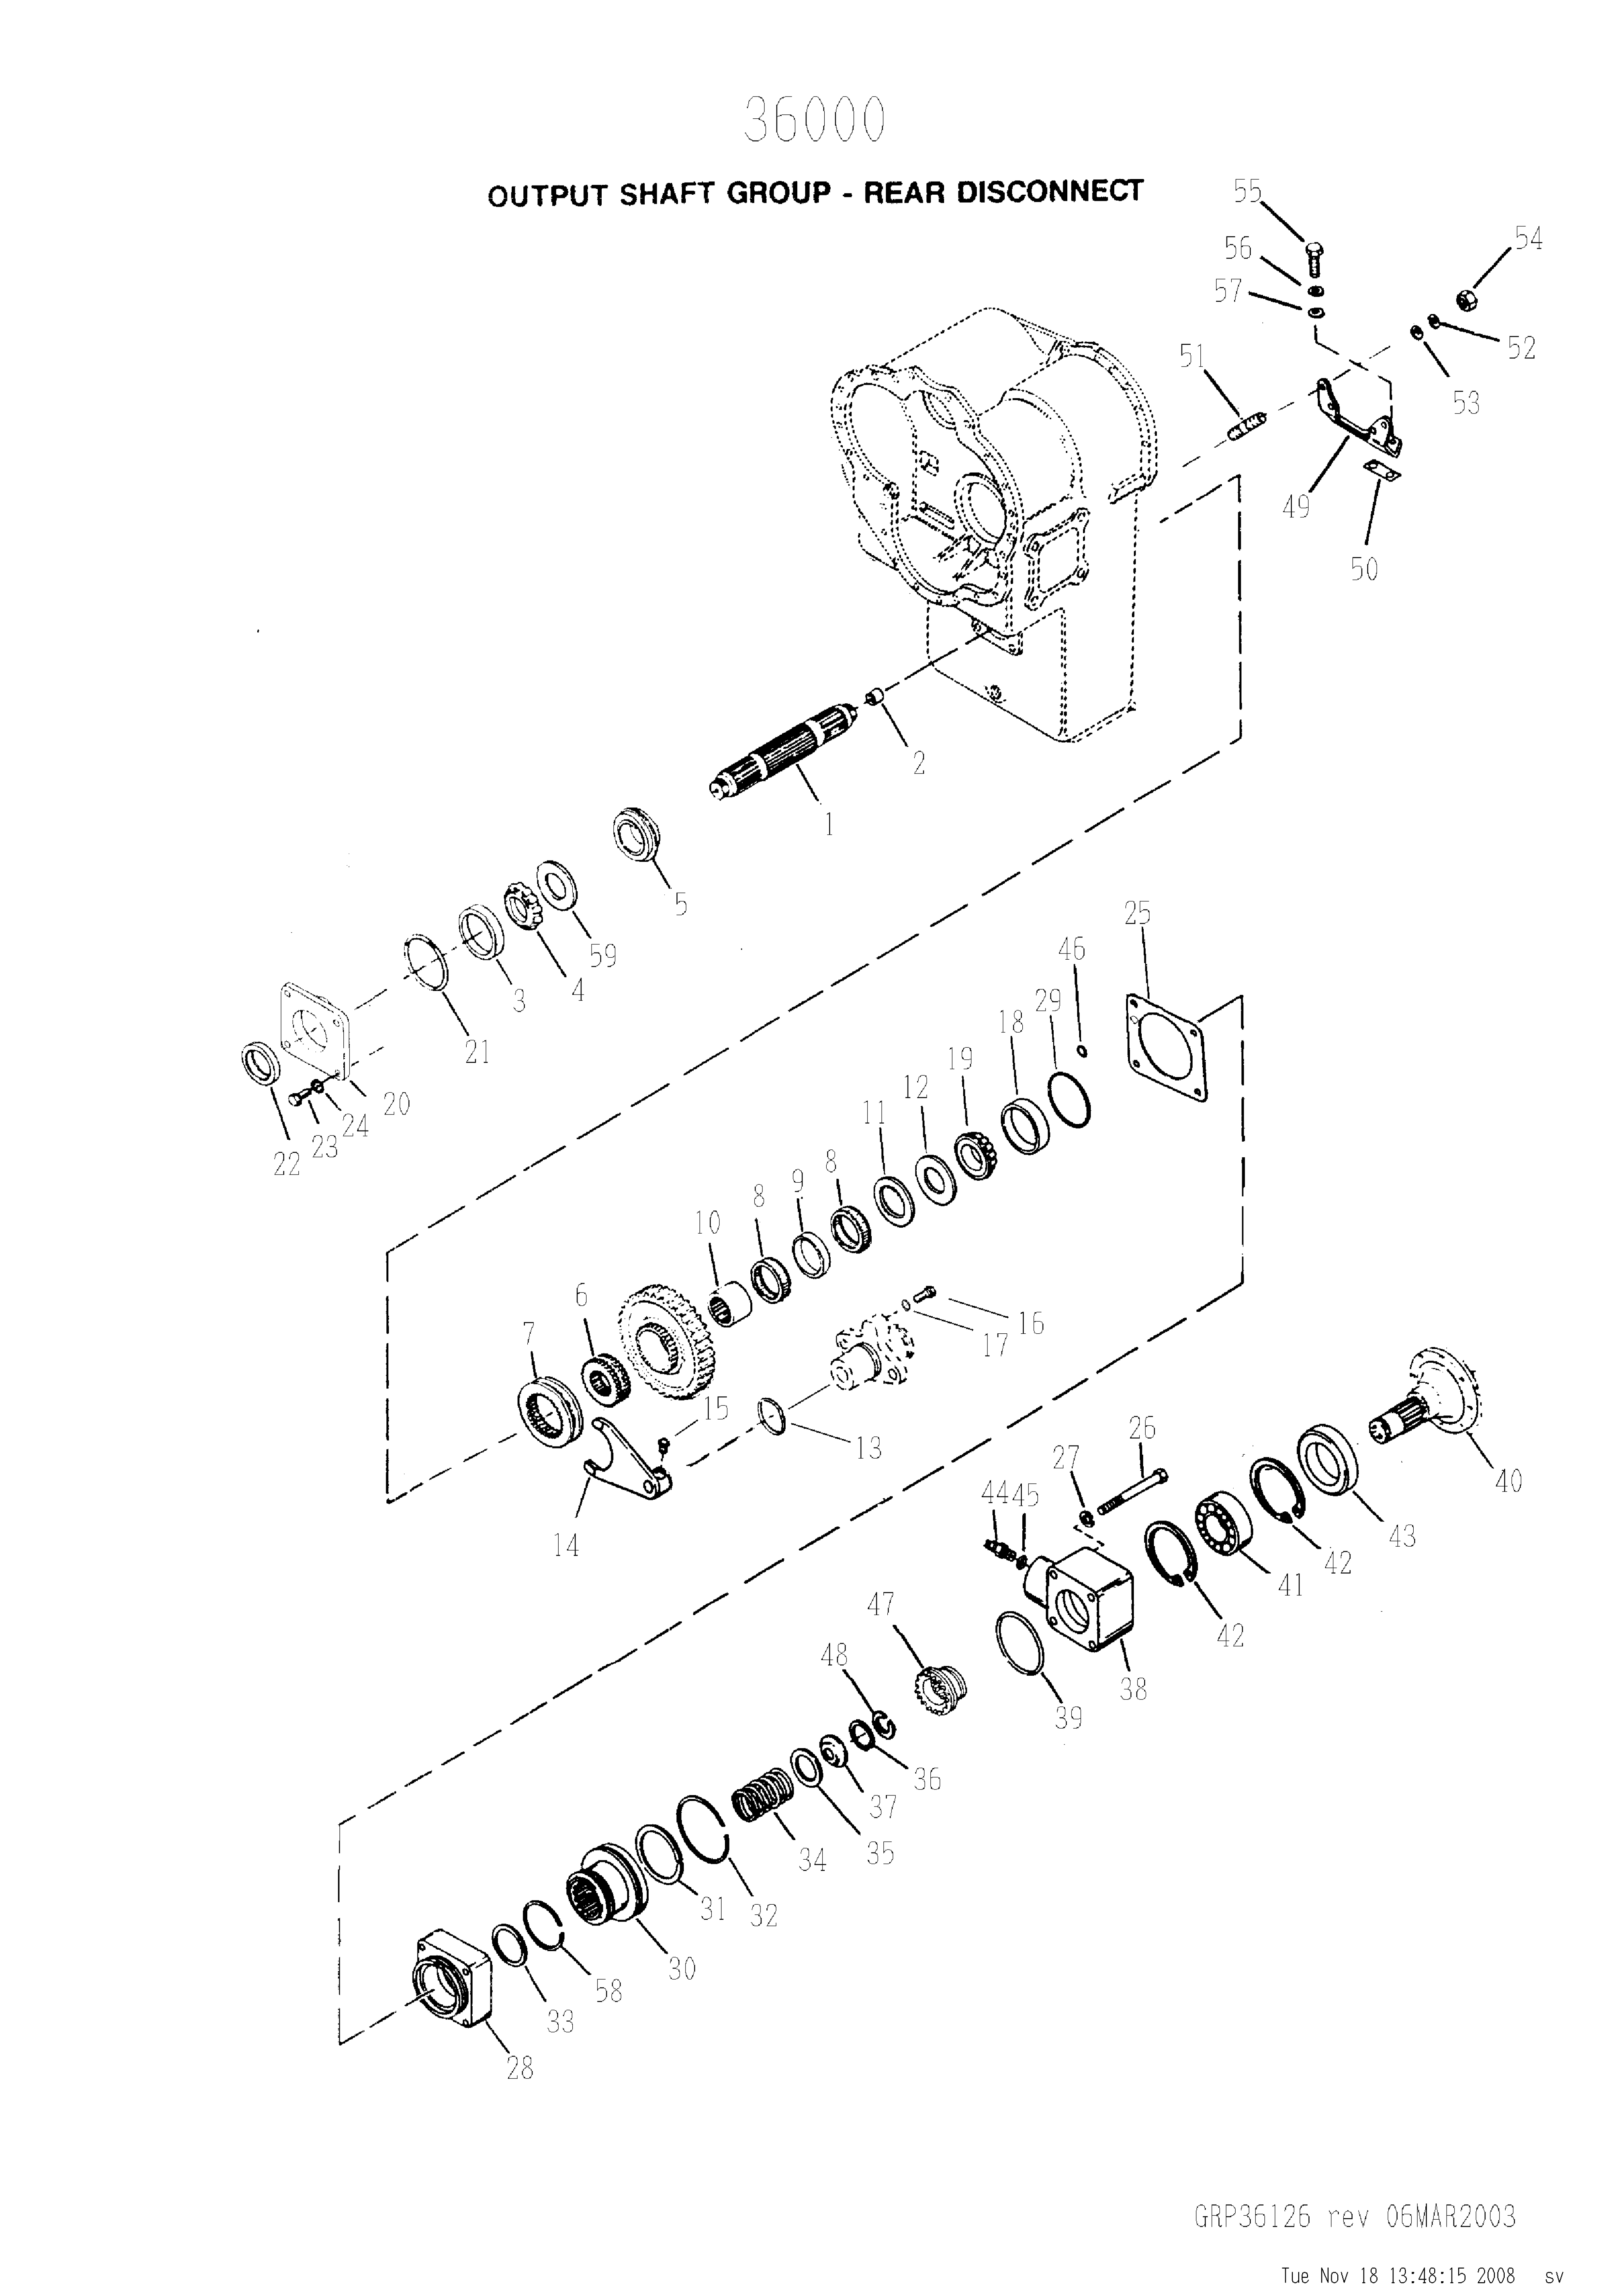 drawing for SCHOEMA, SCHOETTLER MASCHINENFABRIK K24.000250 - OIL SEAL (figure 4)